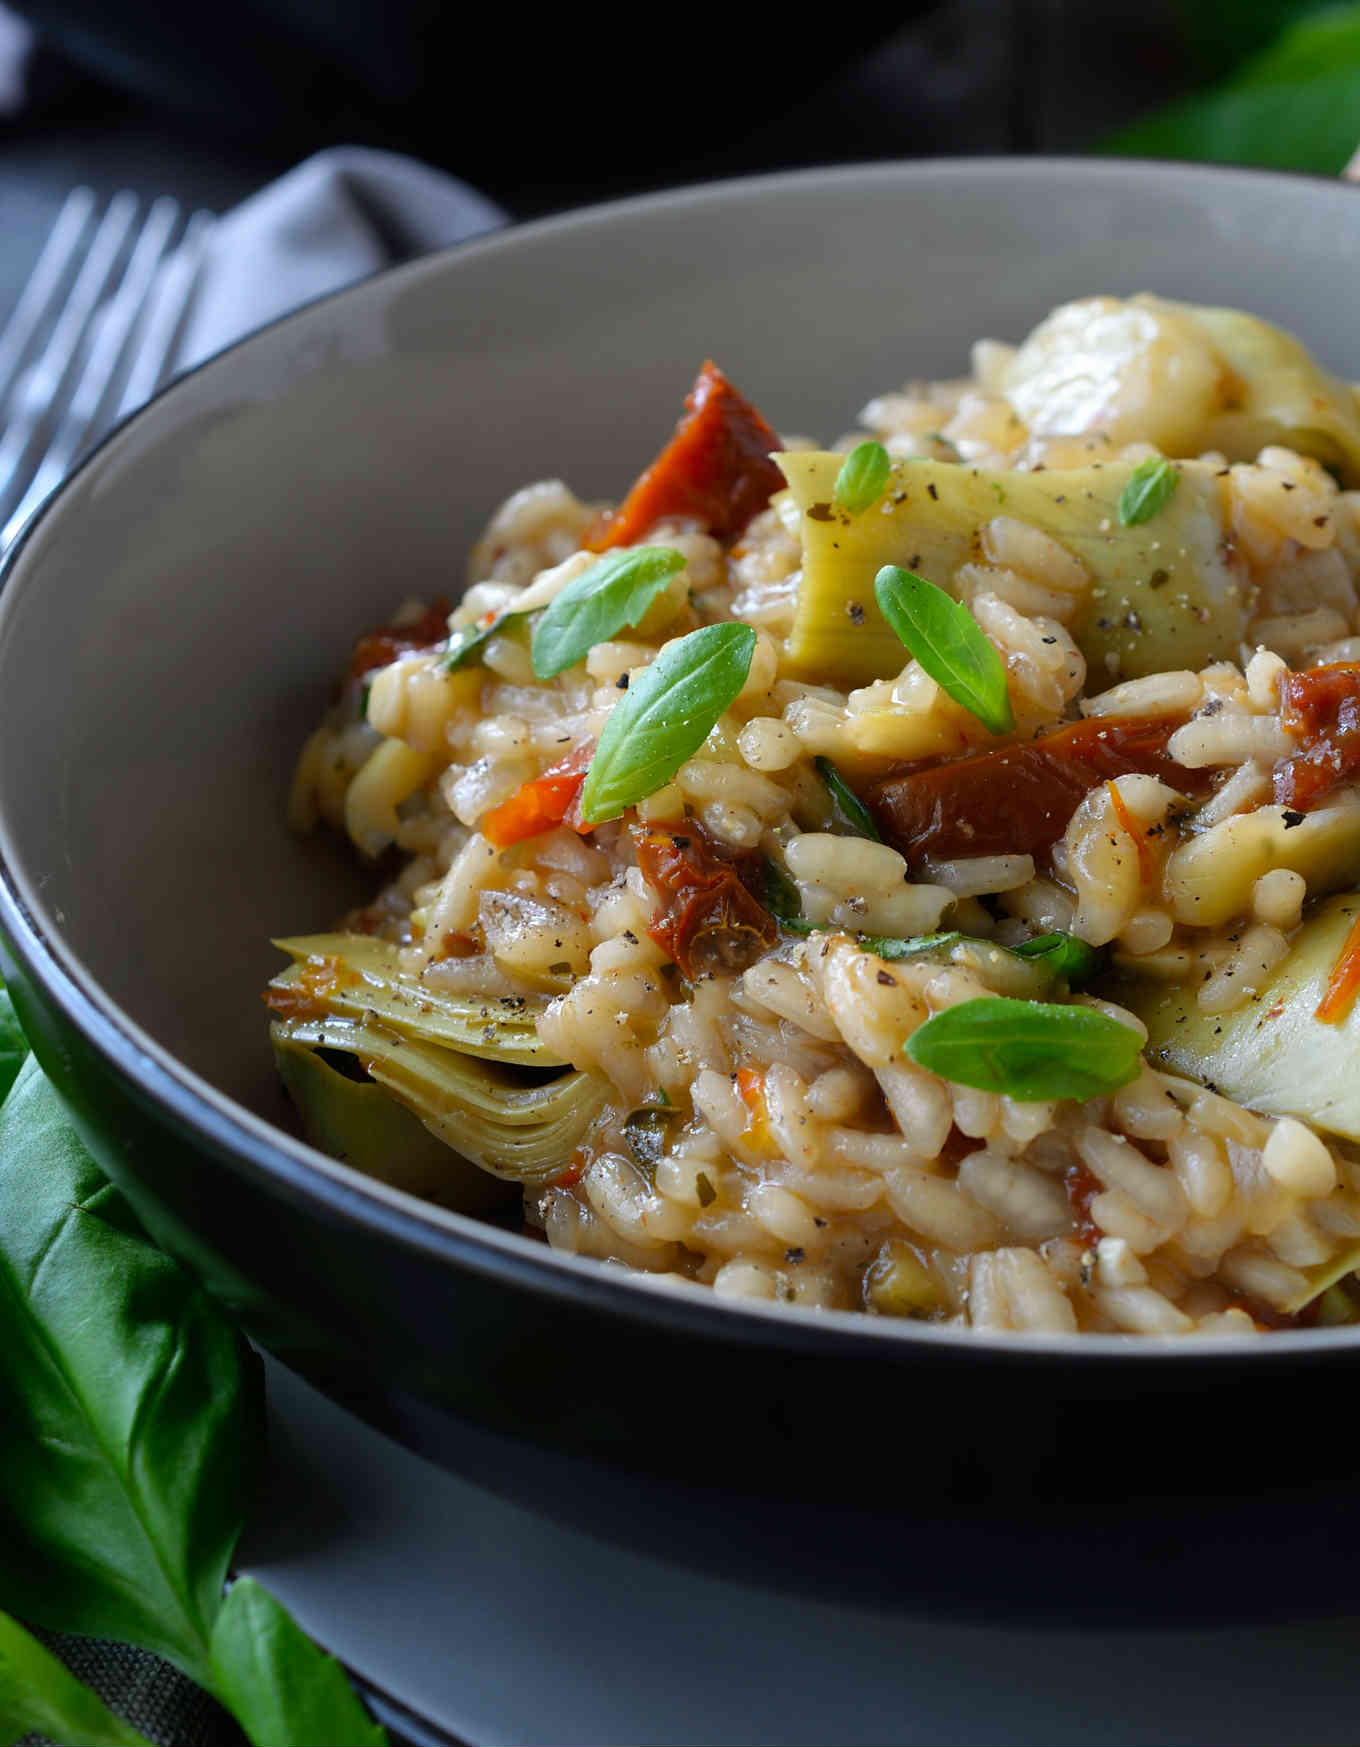 Risotto de alcachofas y tomates secos es una receta vegana de risotto fácil y deliciosa. Lleno de los sabores del Mediterráneo, este risotto es perfecto para vegetarianos y no-vegetarianos también.